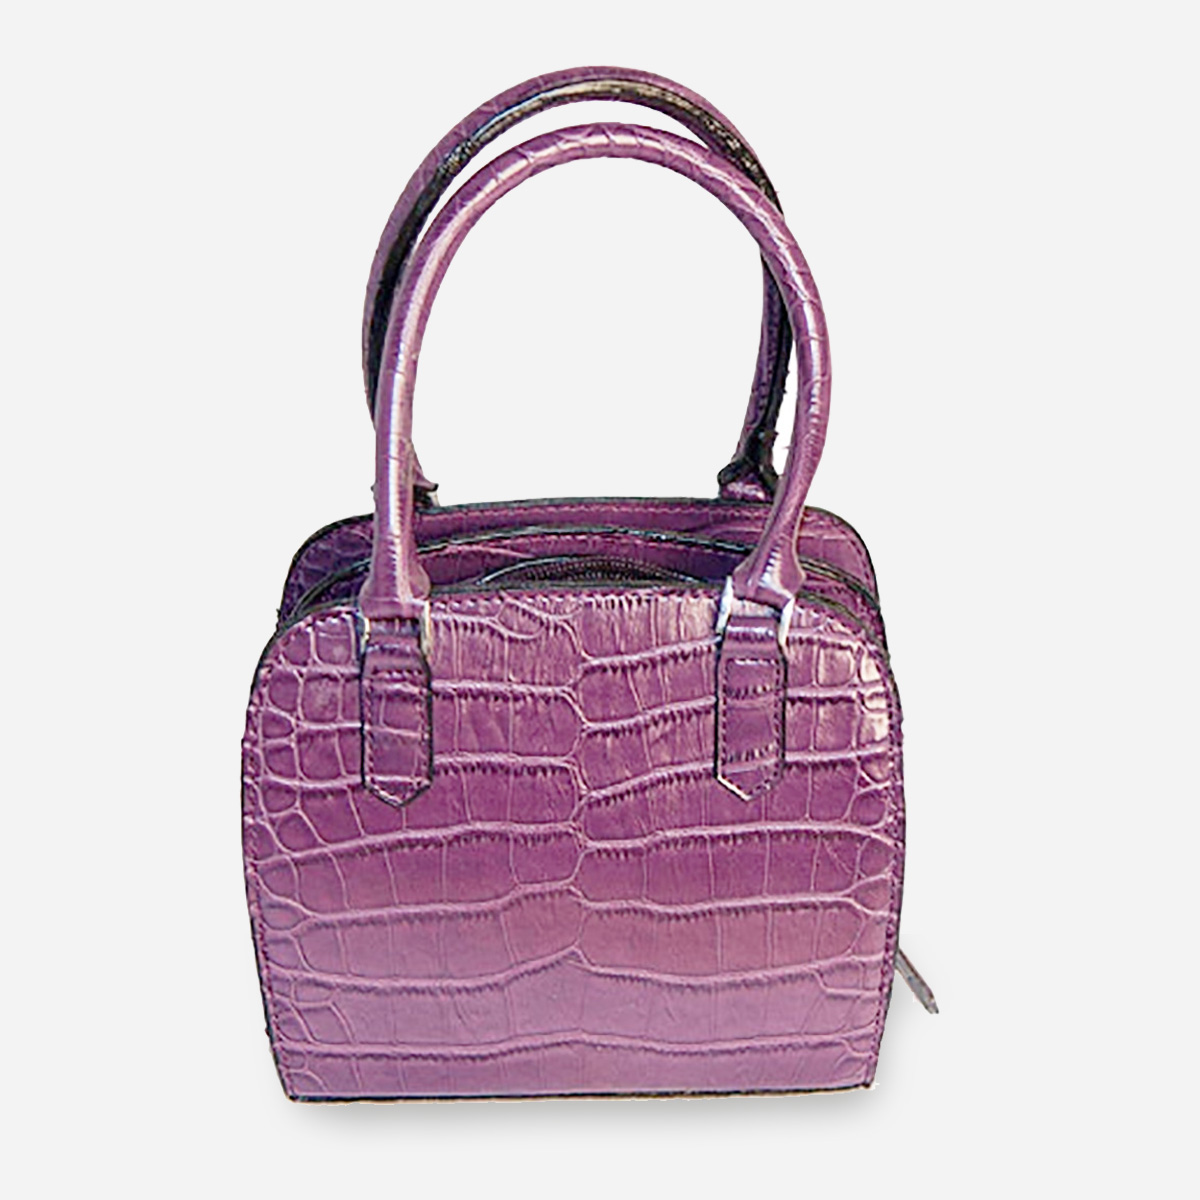 vintage purple handbag